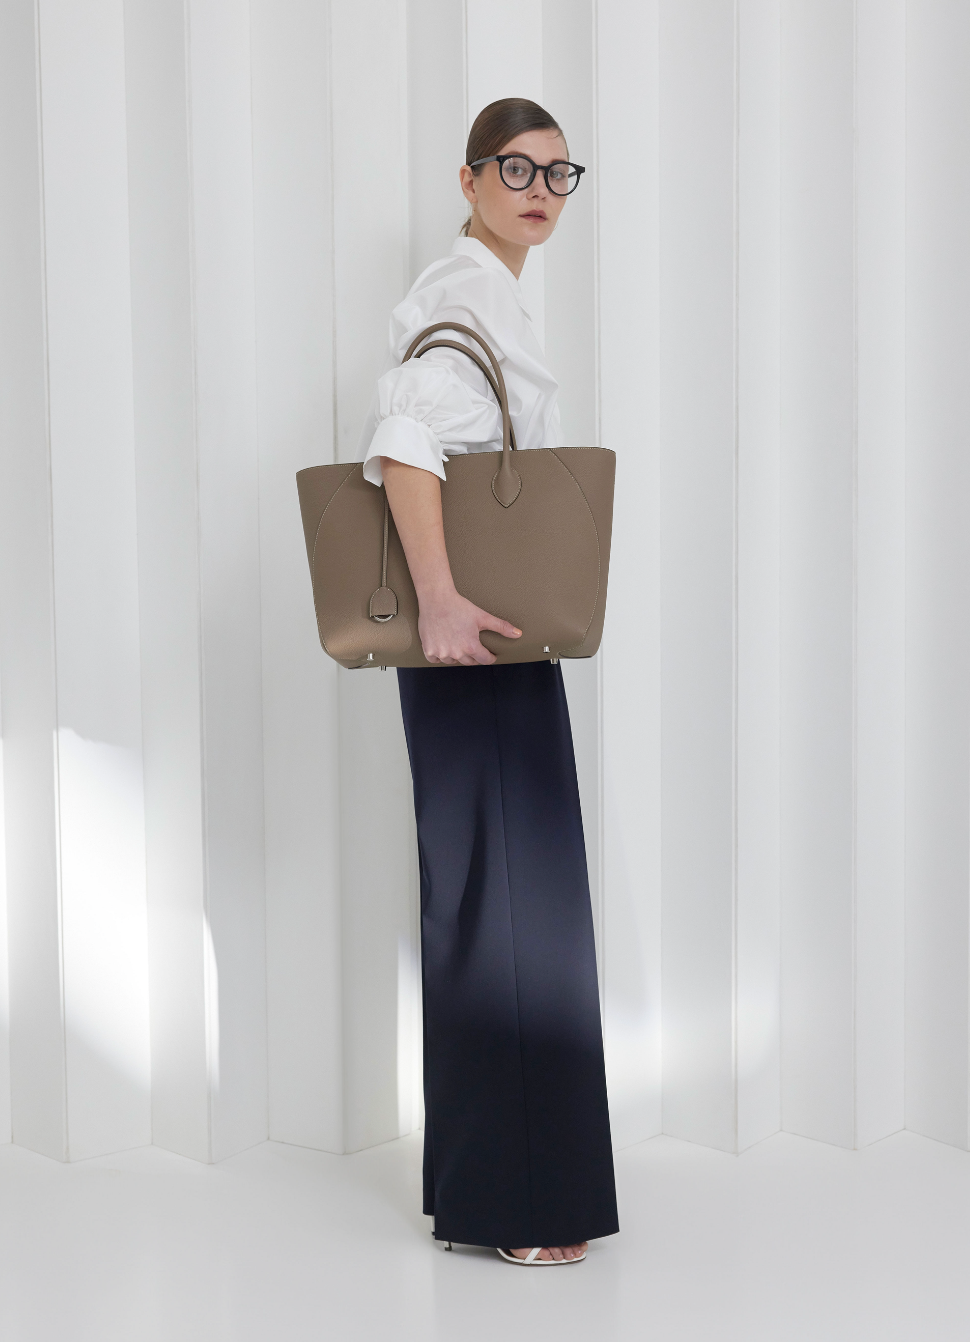 Una mujer de negocios lleva el bolso de piel perfecto para el día a día en la oficina